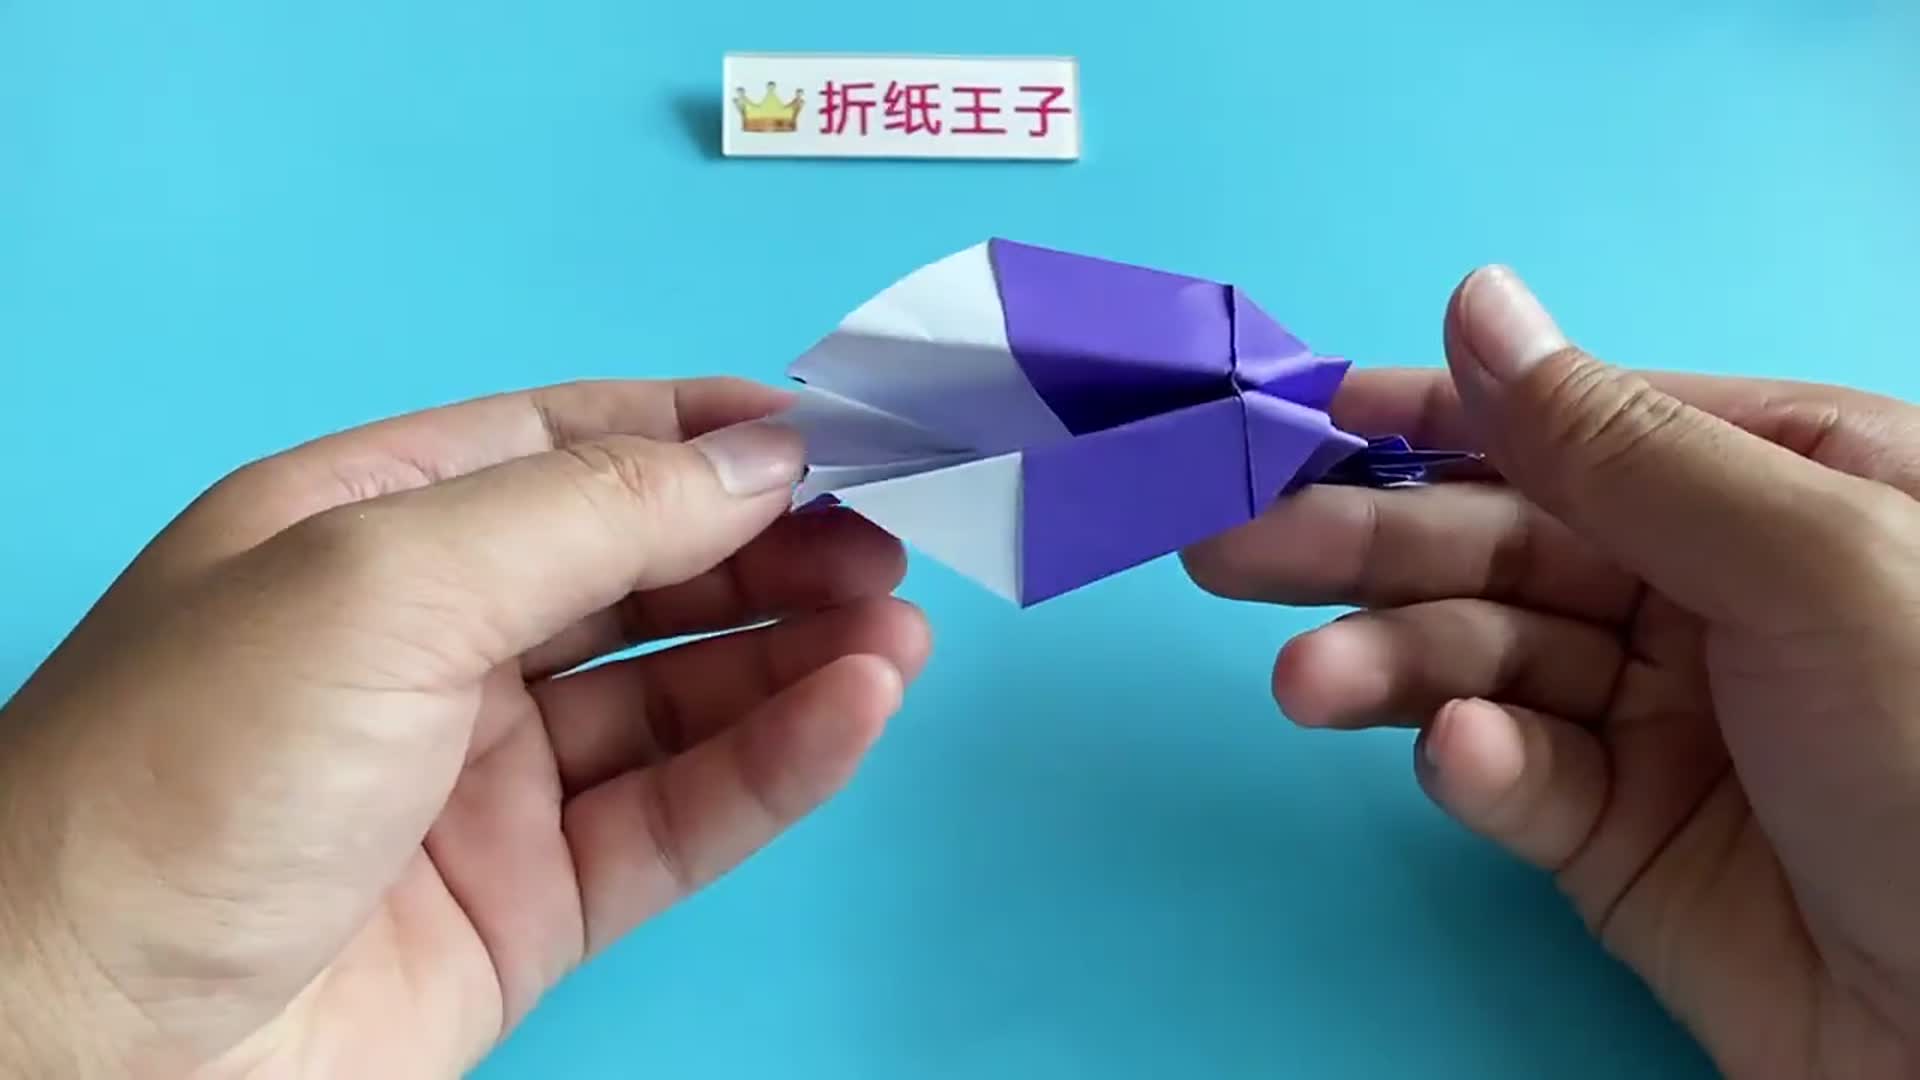 教你折纸小天鹅,简单漂亮,你也能学会